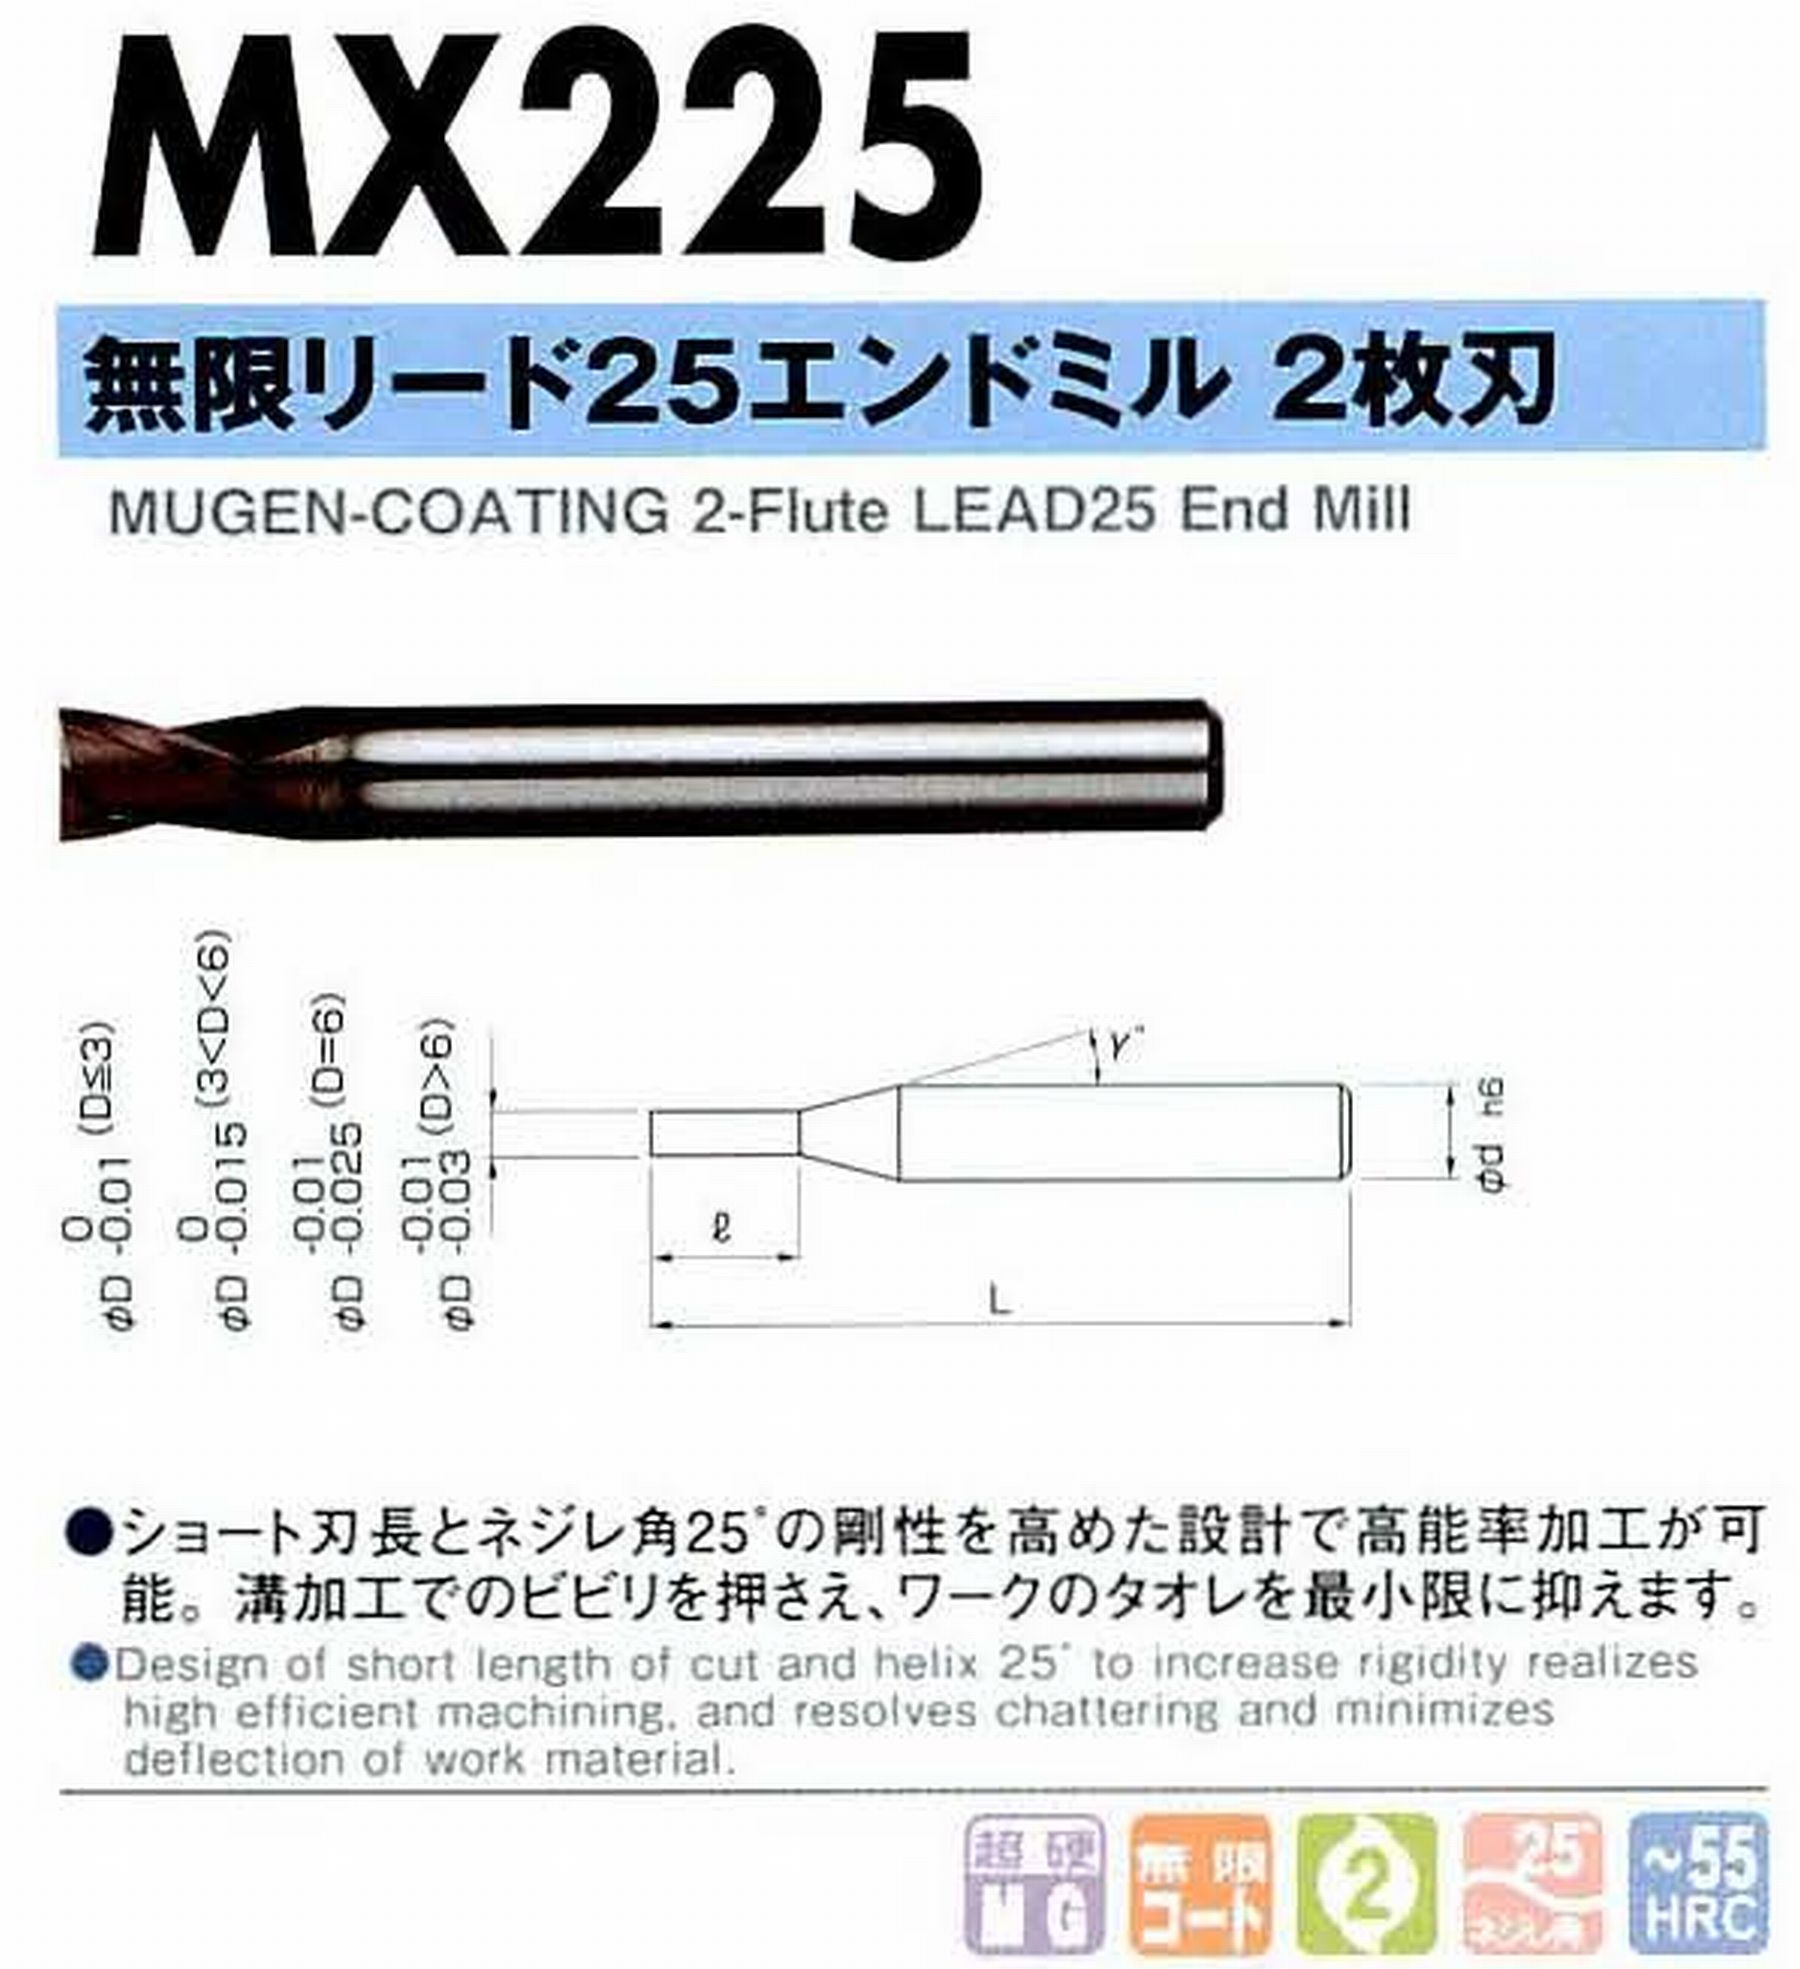 NS 日進工具 MX225 無限リード25エンドミル2枚刃 コードNO．08-00025-00150 刃径1.5 刃長1.5 首角12° シャンク径4mm 全長45